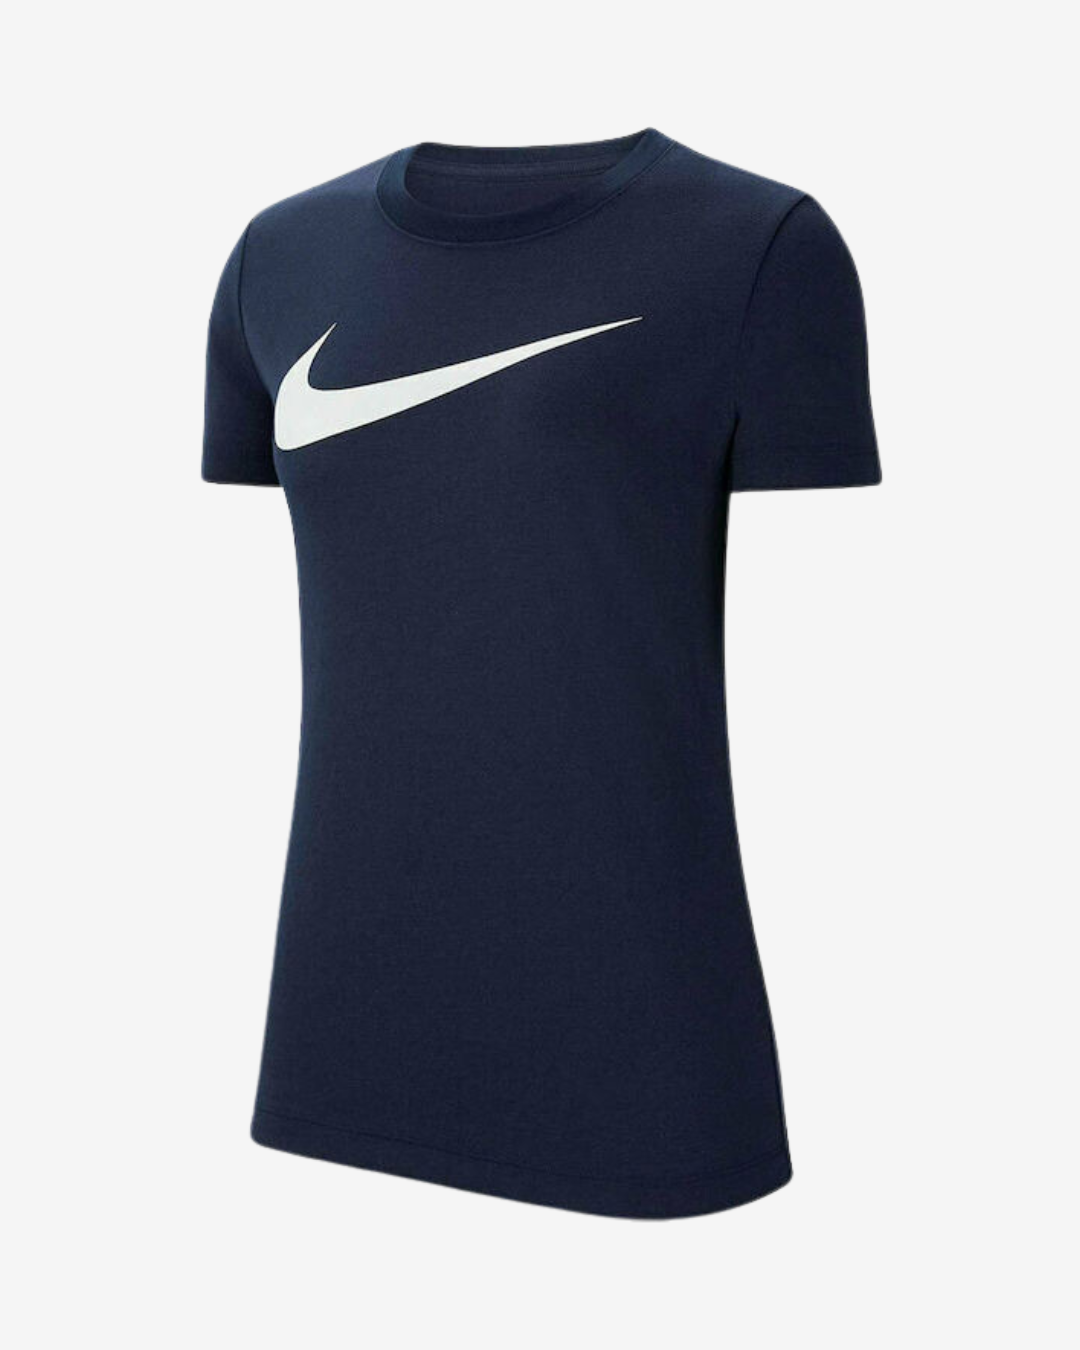 Billede af Nike Dri-fit park 20 dame t-shirt - Navy - Str. XS - Modish.dk